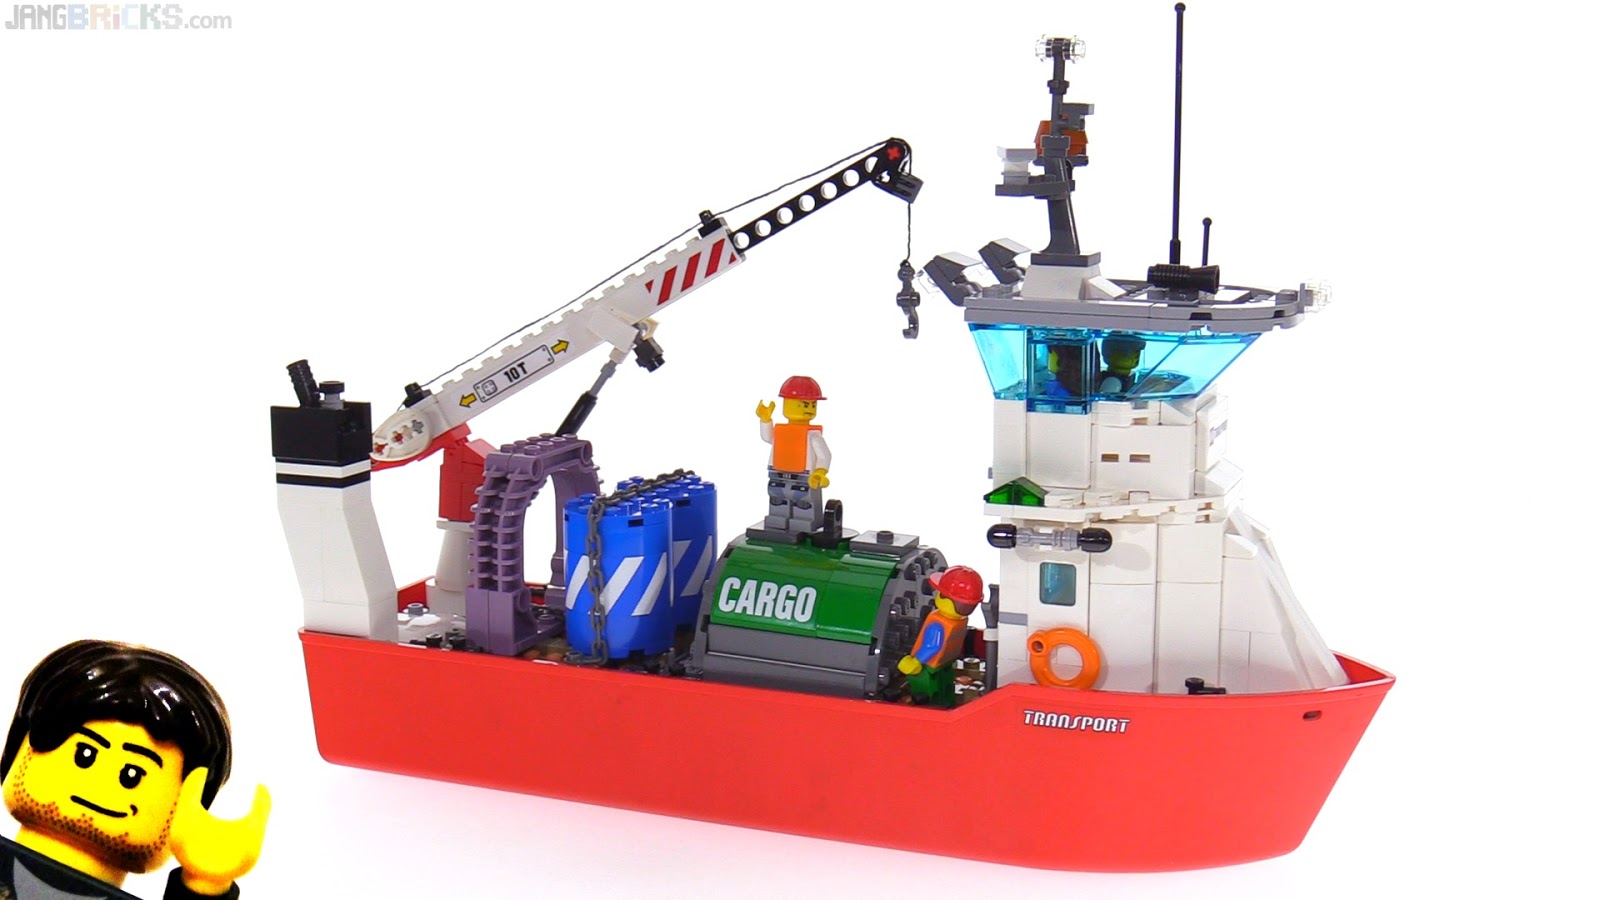 nope, not a good lego cargo ship moc